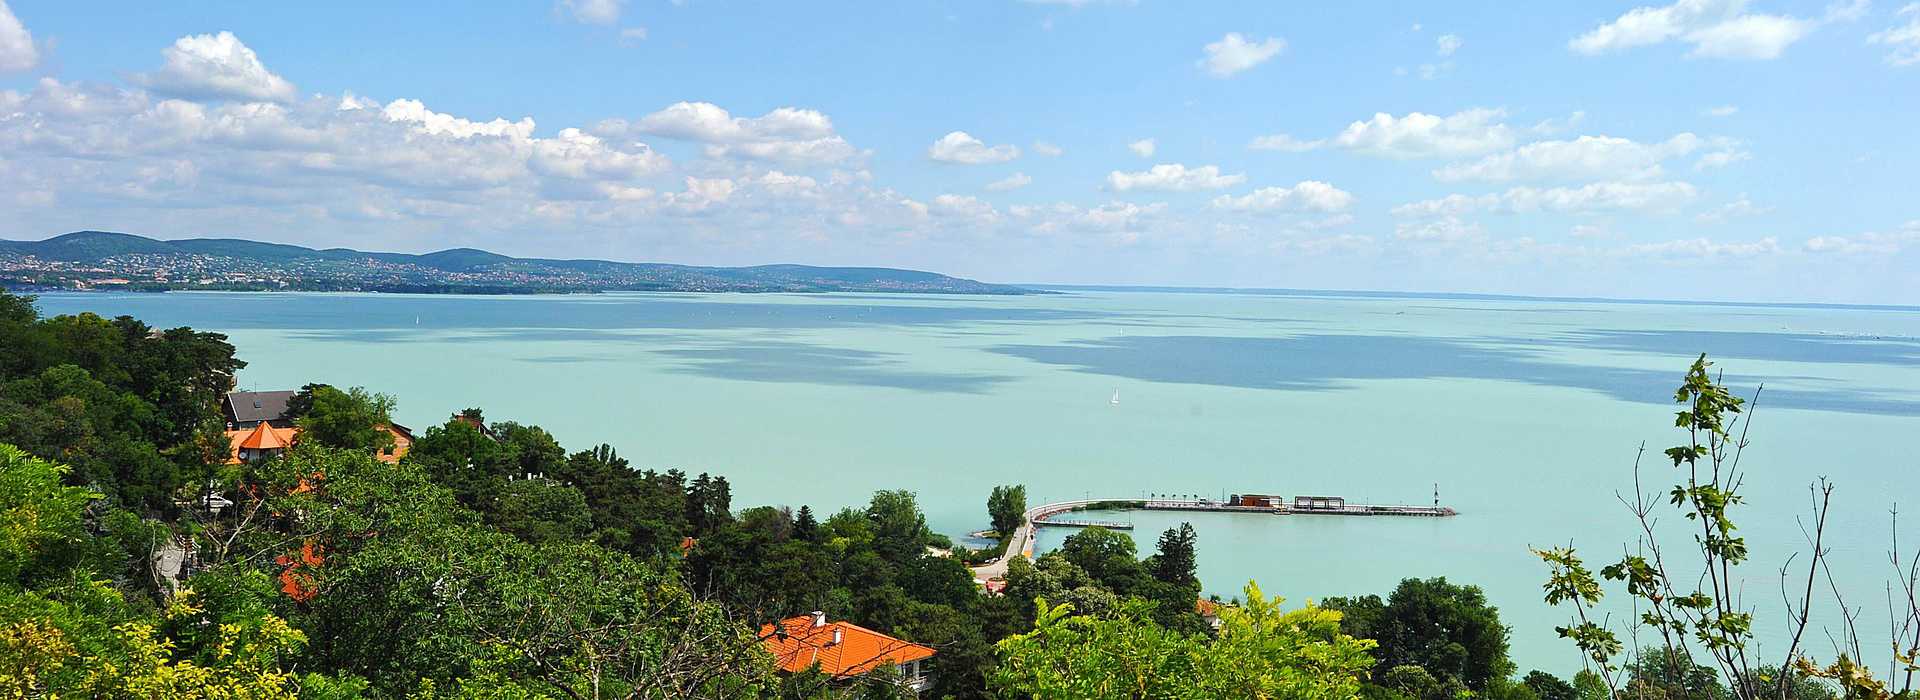 Озеро балатон венгрия цены купить дом в салониках греция